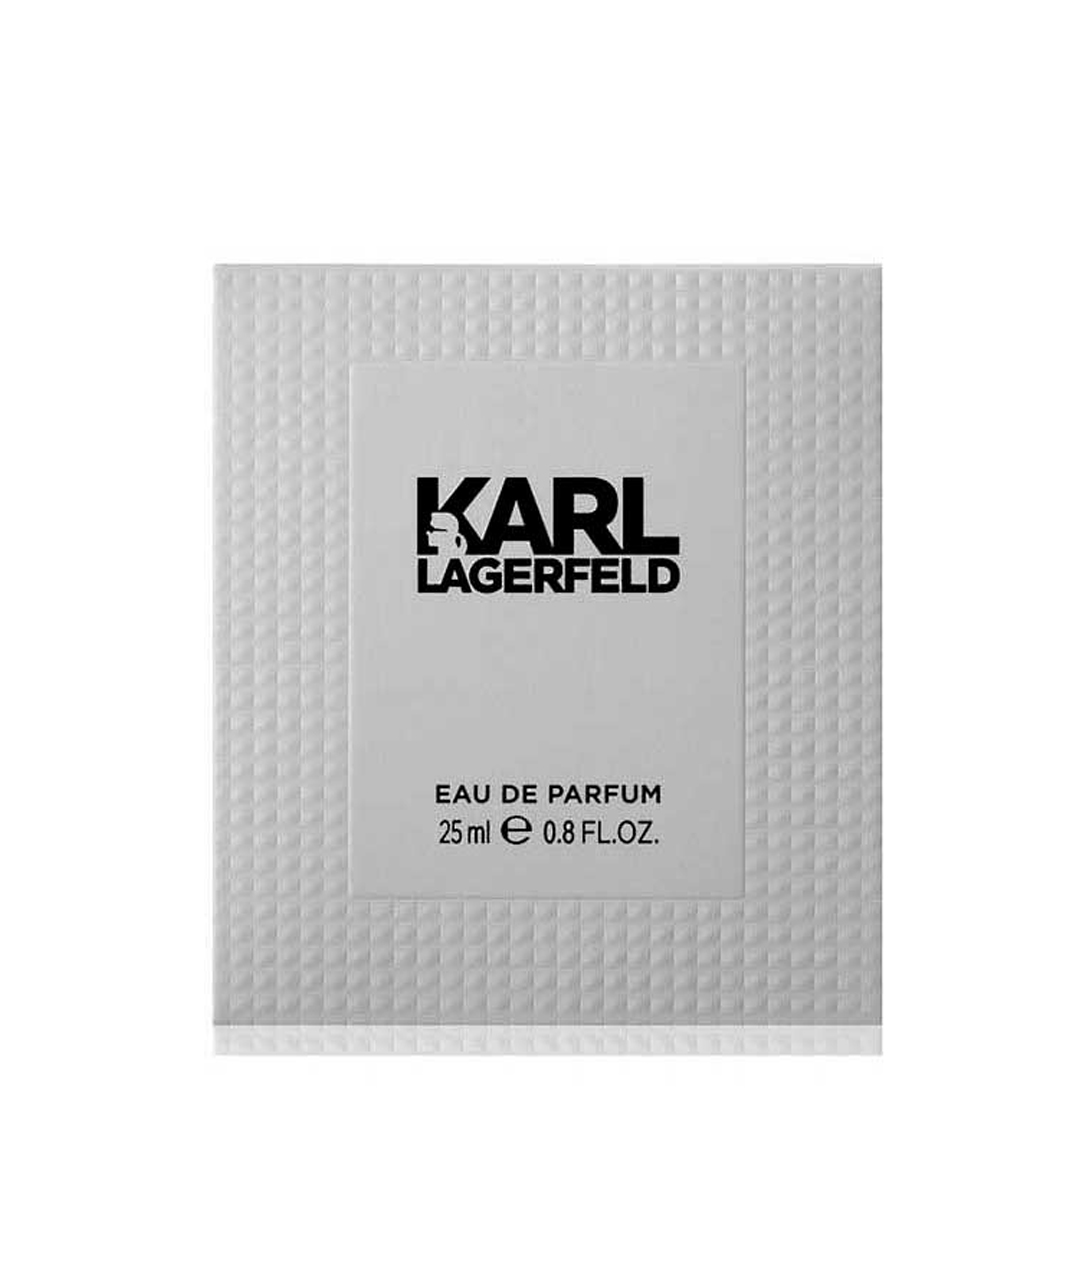 Perfume «Karl Lagerfeld» for women, 25 ml